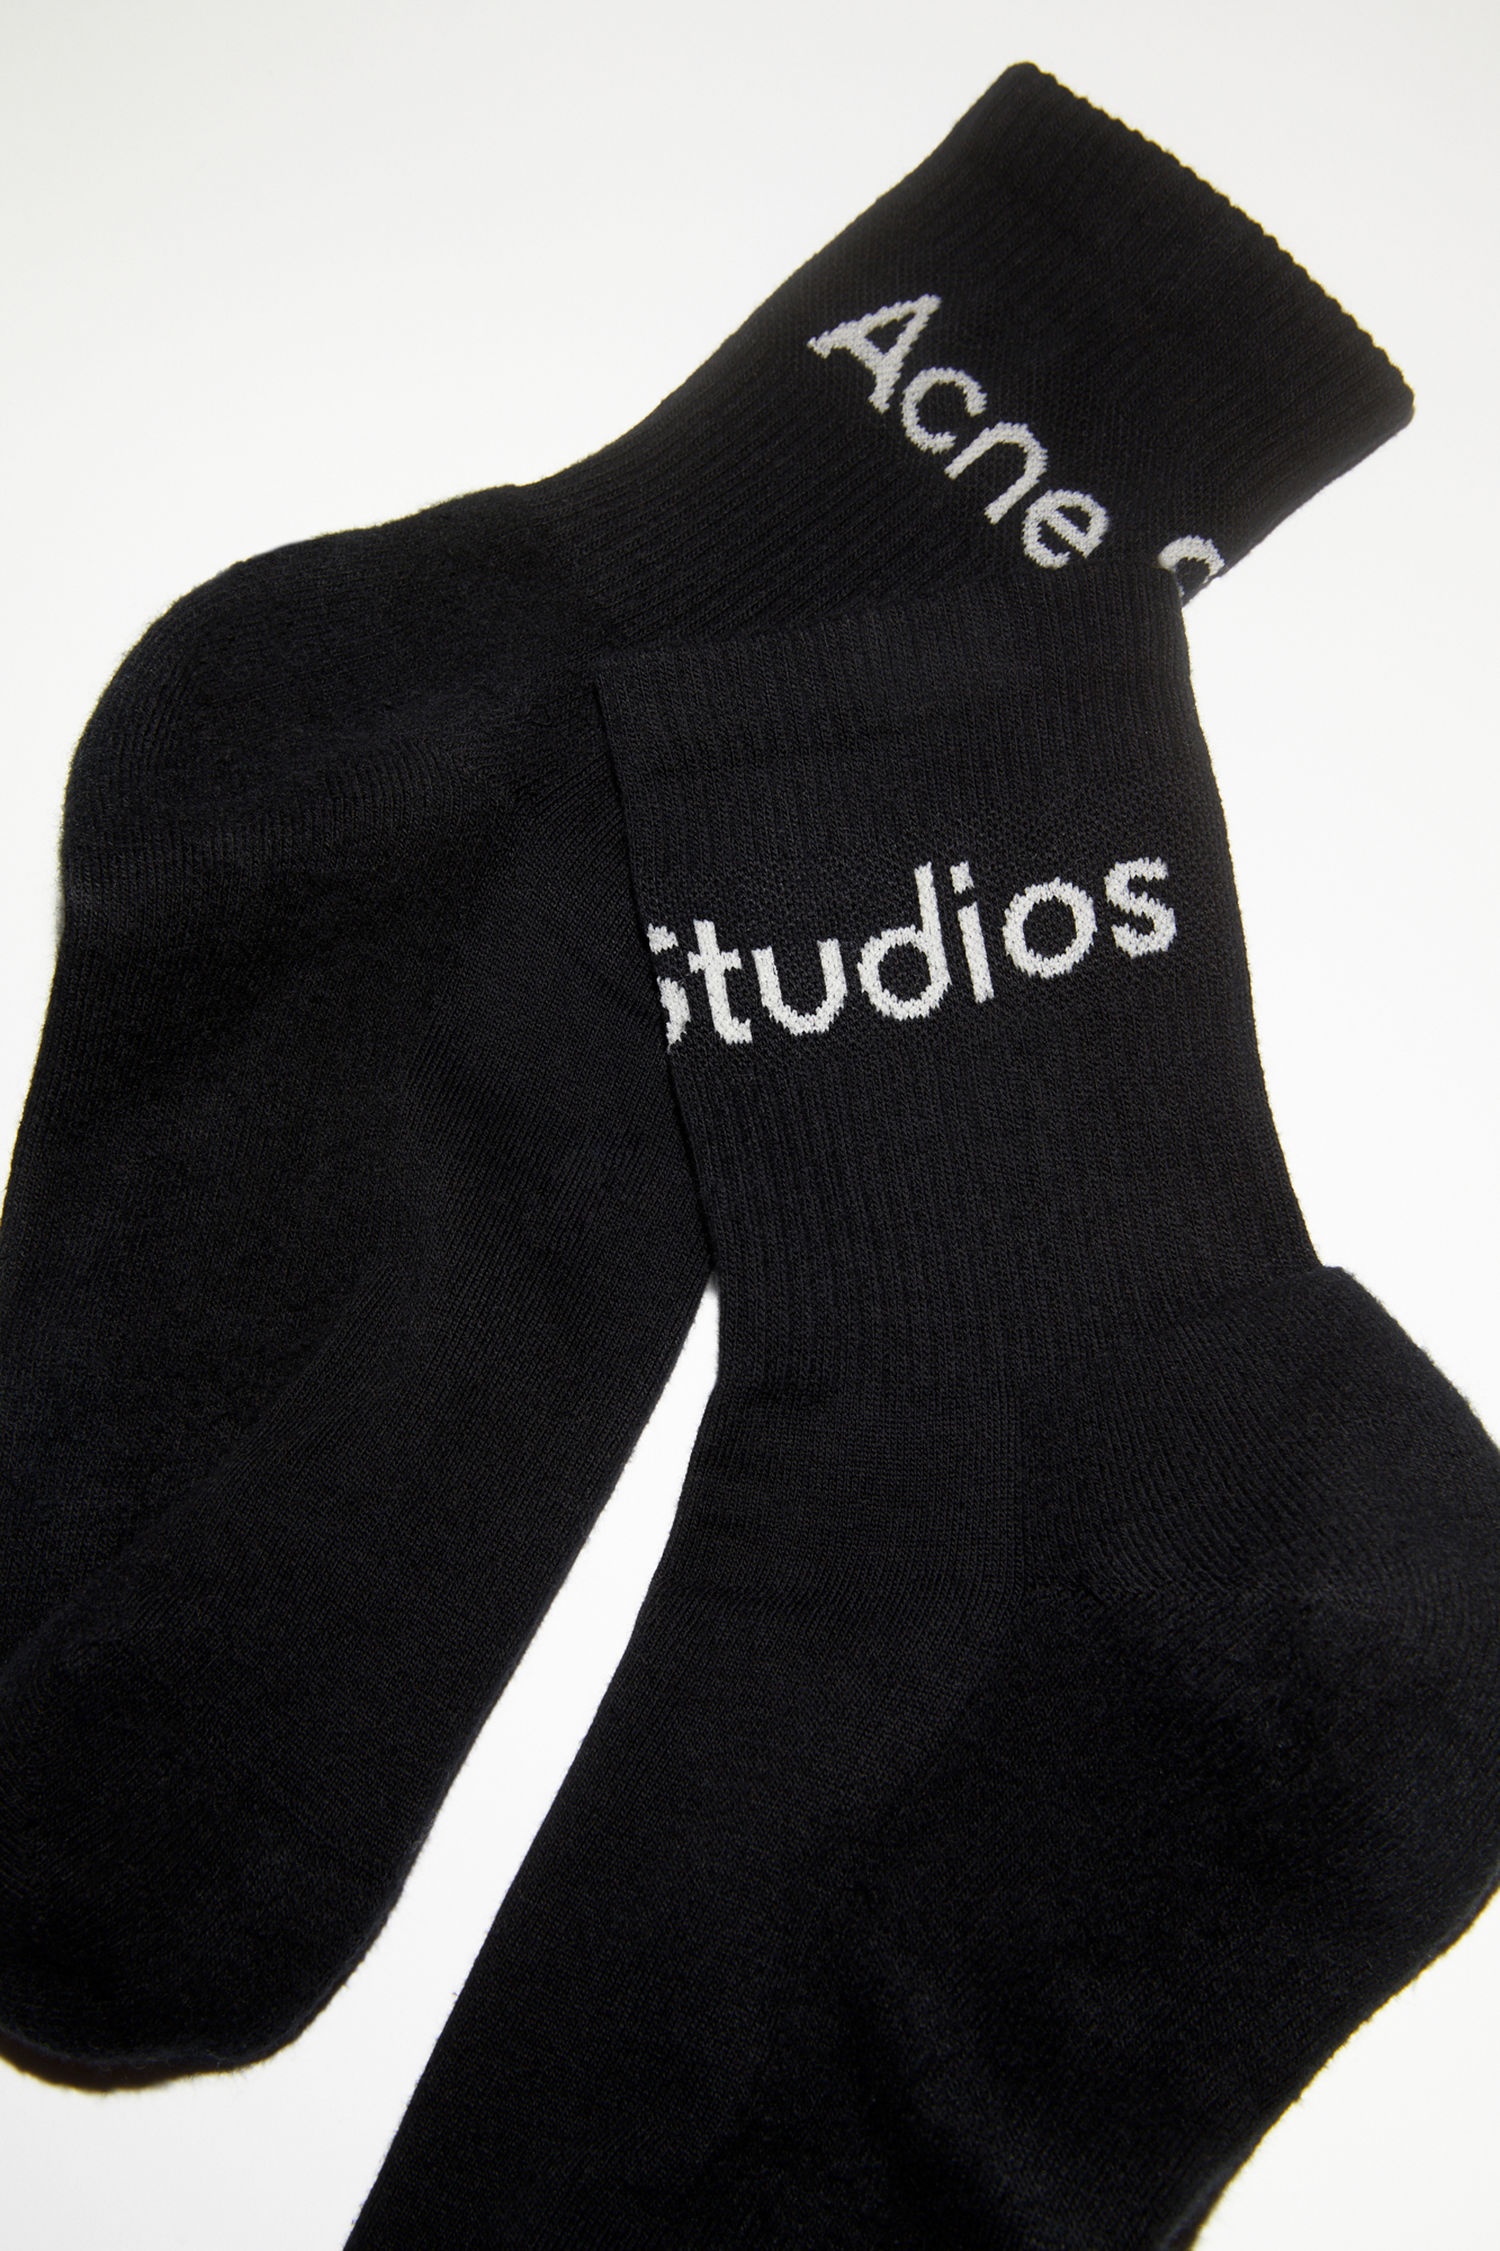 Ribbed logo socks - Black satin/grey - 4